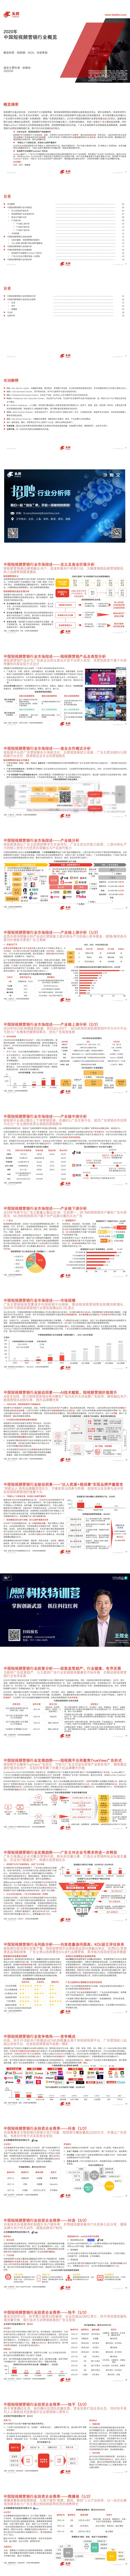 【头豹】2020年中国短视频营销行业概览_0.jpg